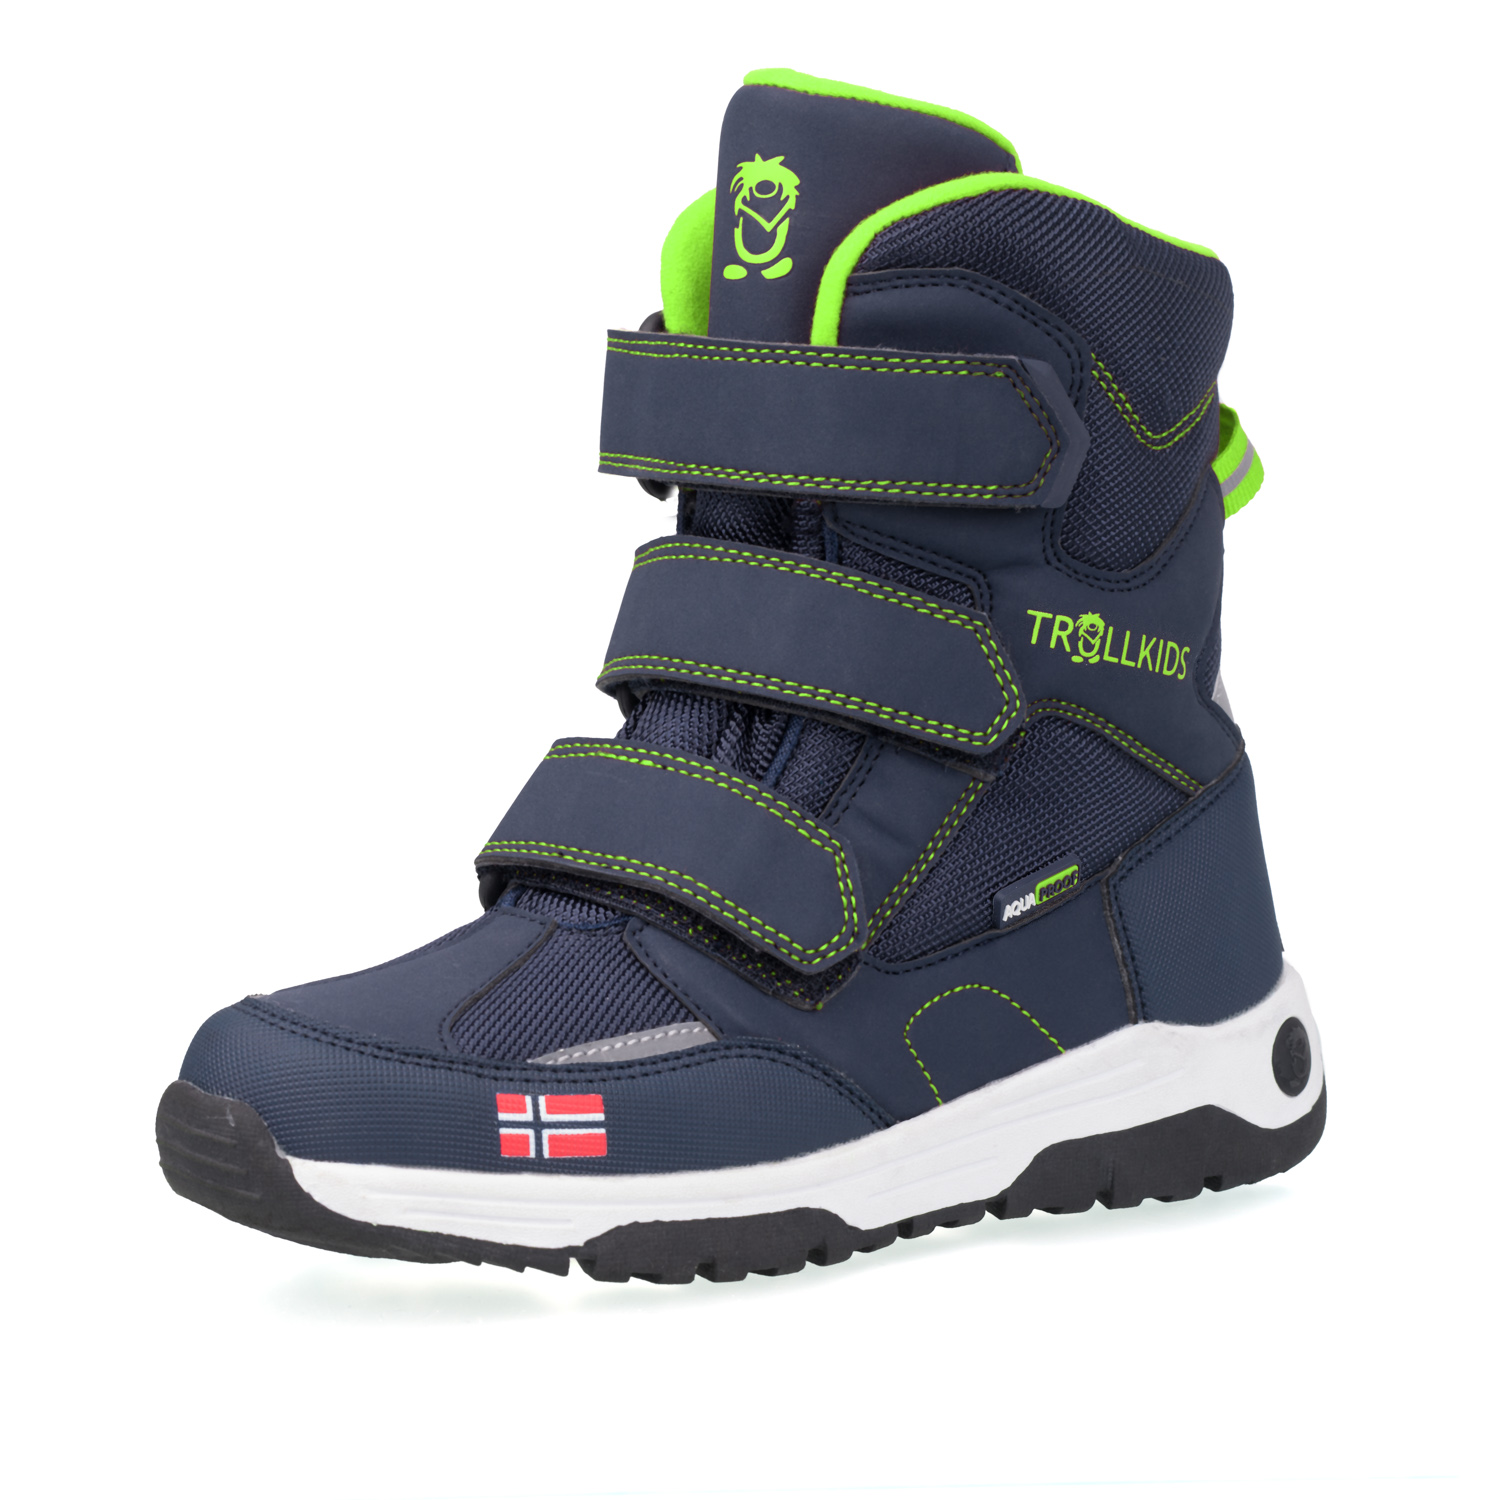 Trollkids "Kids Lofoten Winter Boots" - navy/ viper green